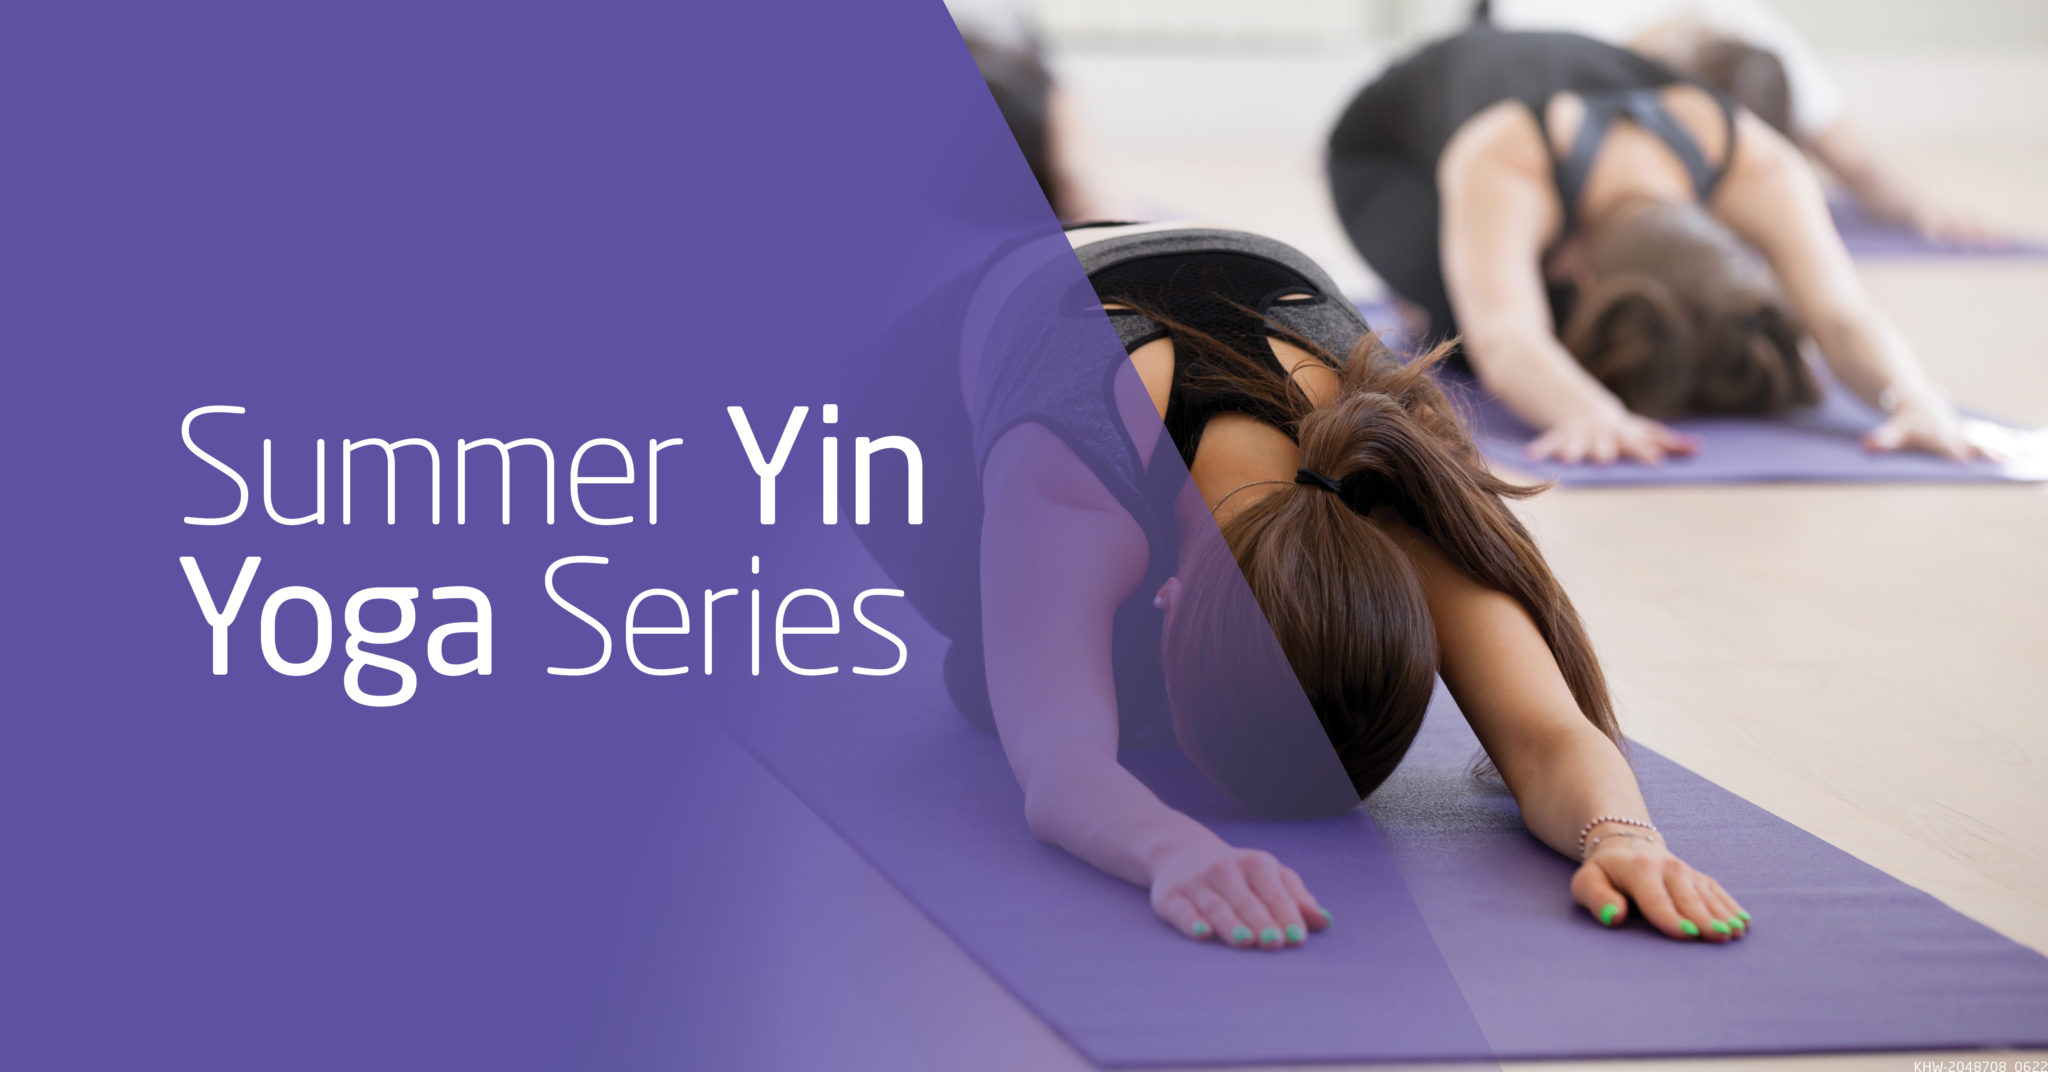 Summer Yin Yoga Series